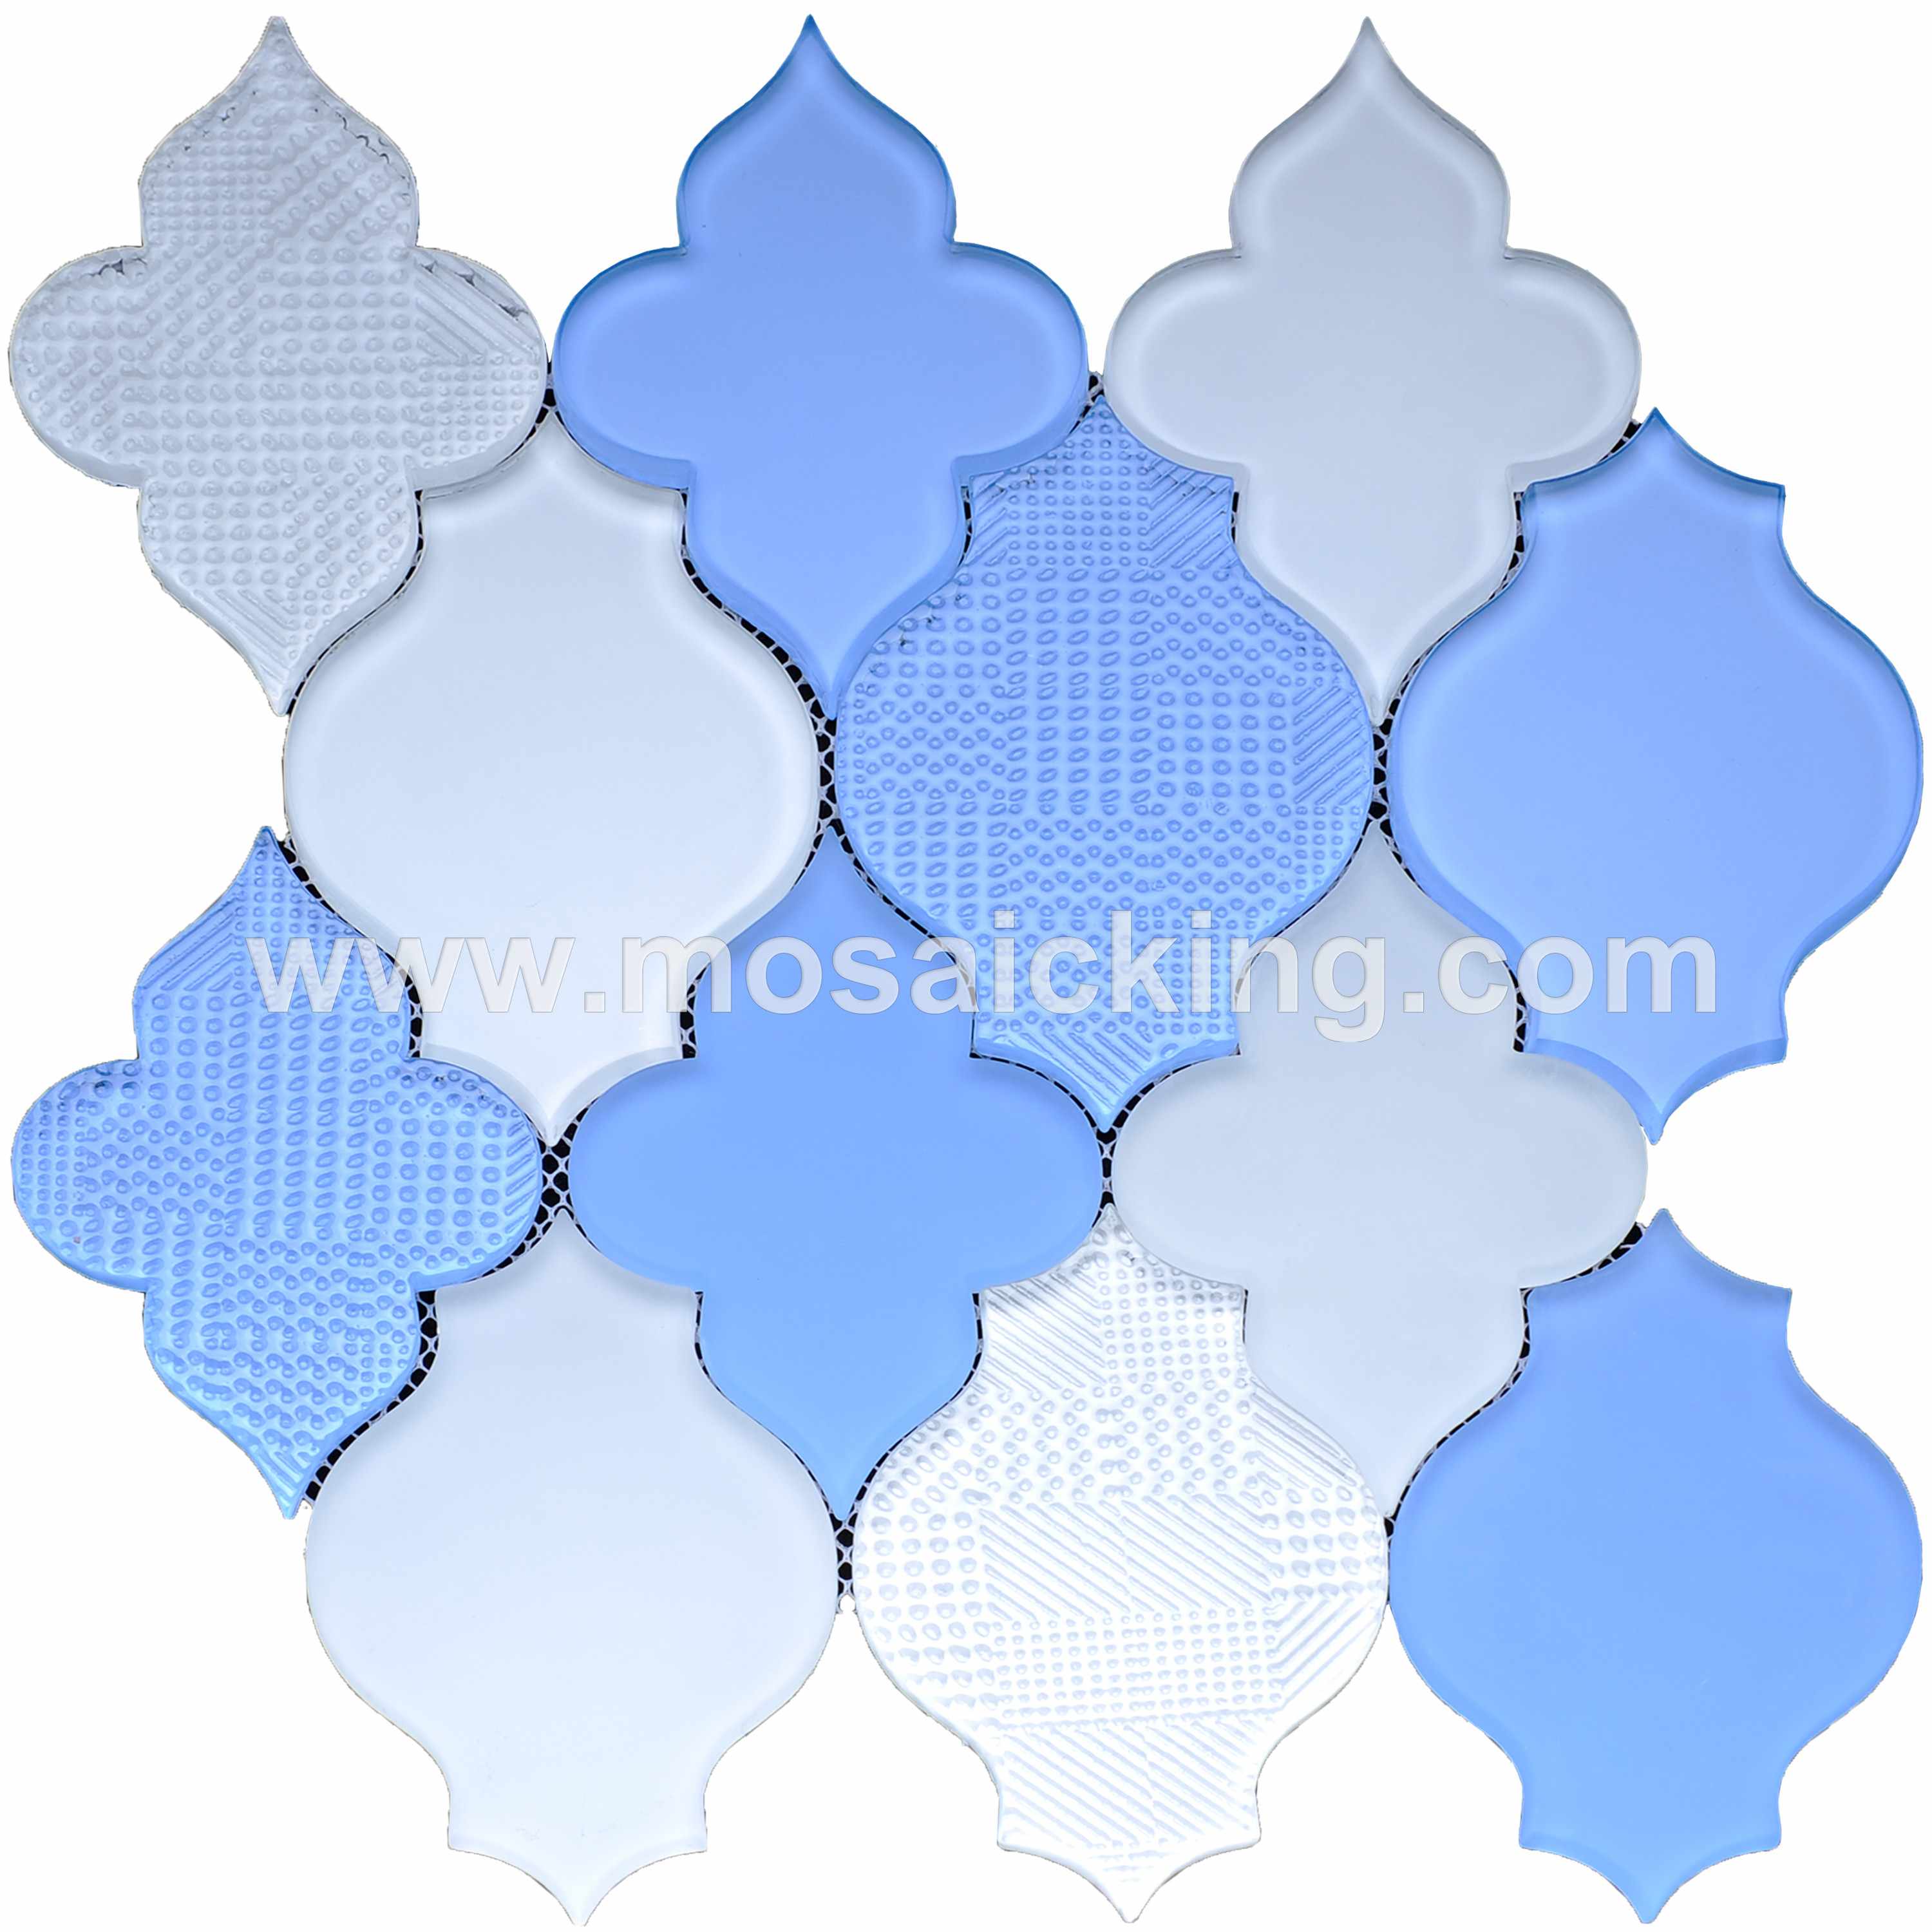 Waterjet Glass Mosaic Tiles MS2